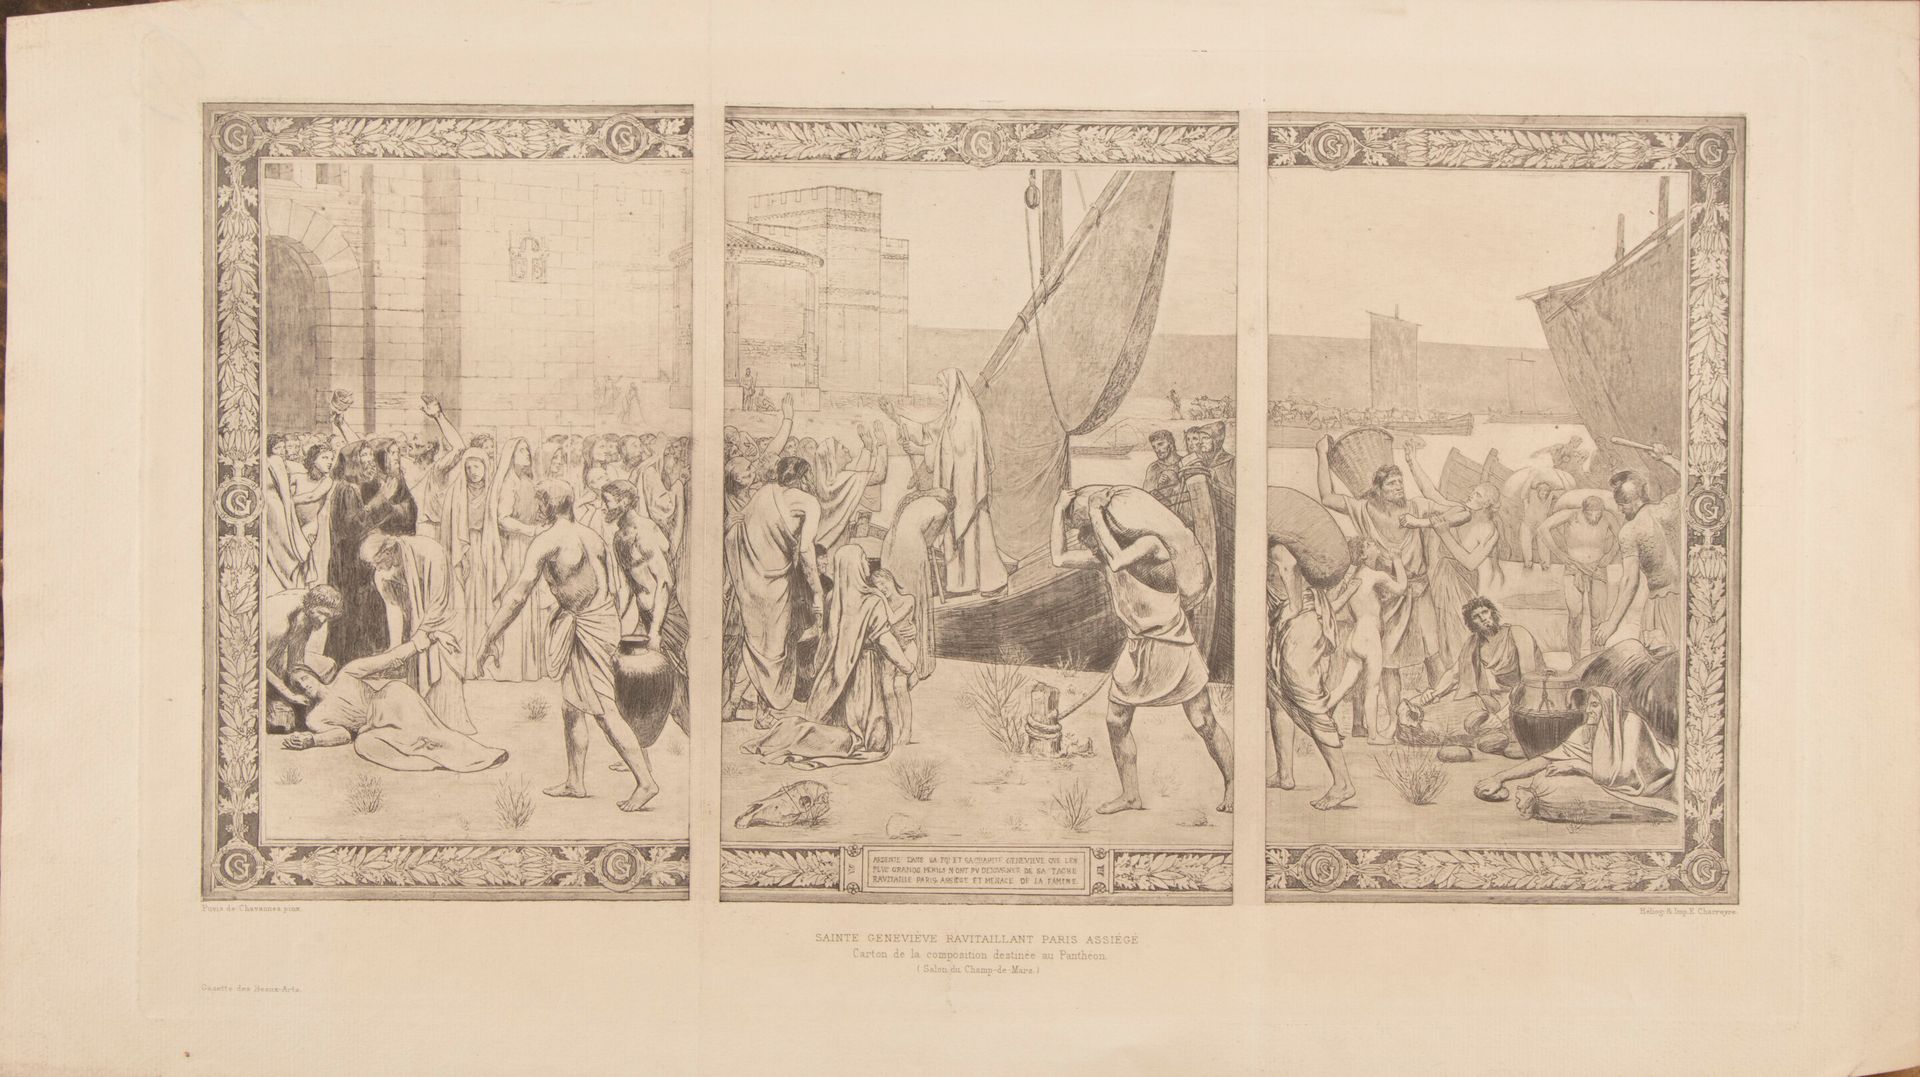 Null Nach PUVIS de CHAVANNE (1824-1898)

Sainte Geneviève rvitaillant Paris assi&hellip;